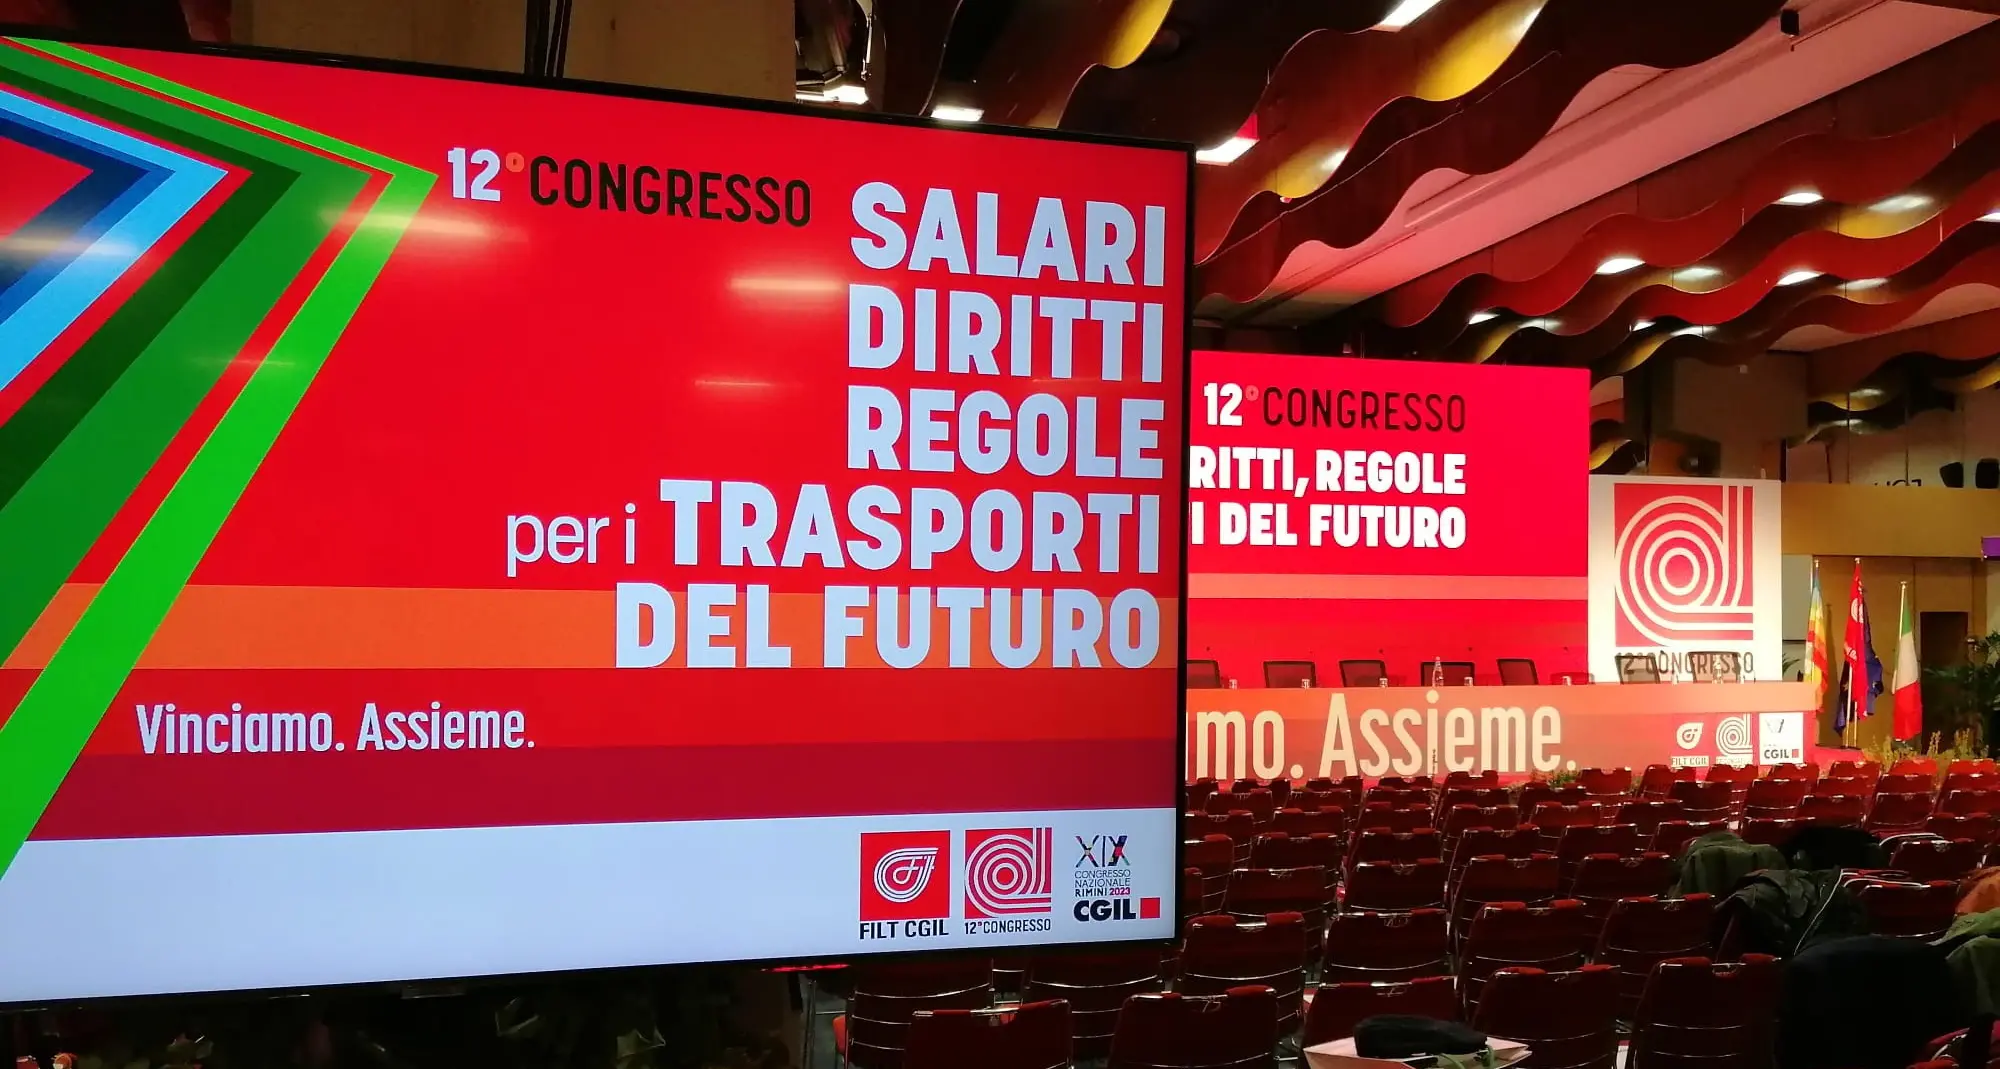 Salari, diritti, regole per i trasporti del futuro. A Catania il Congresso della Filt Cgil